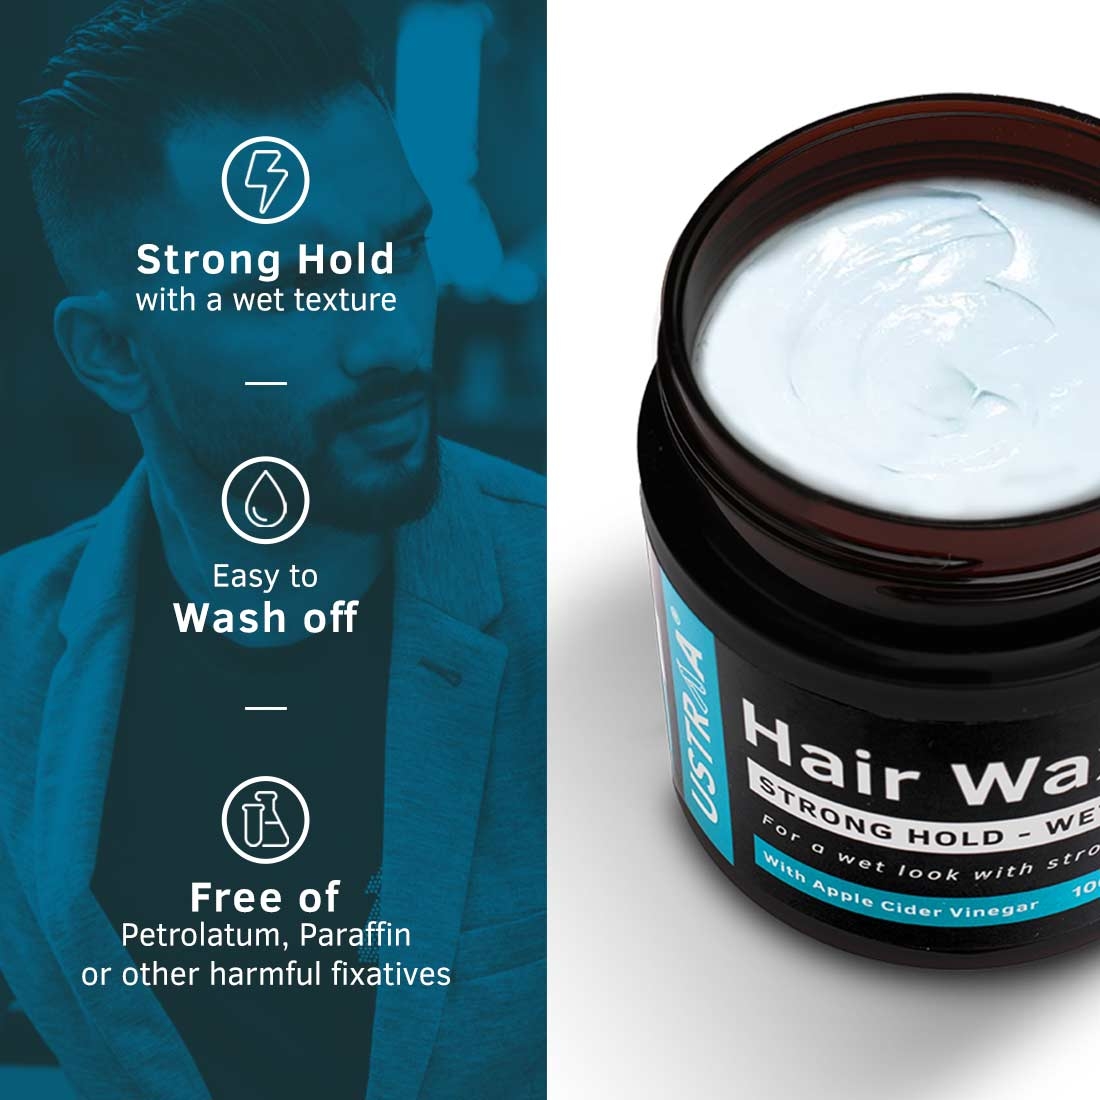 Ustraa | Ustraa O.G Deodorant - 150ml & Hair Wax Strong Hold Wet Look - 100g Combo 3